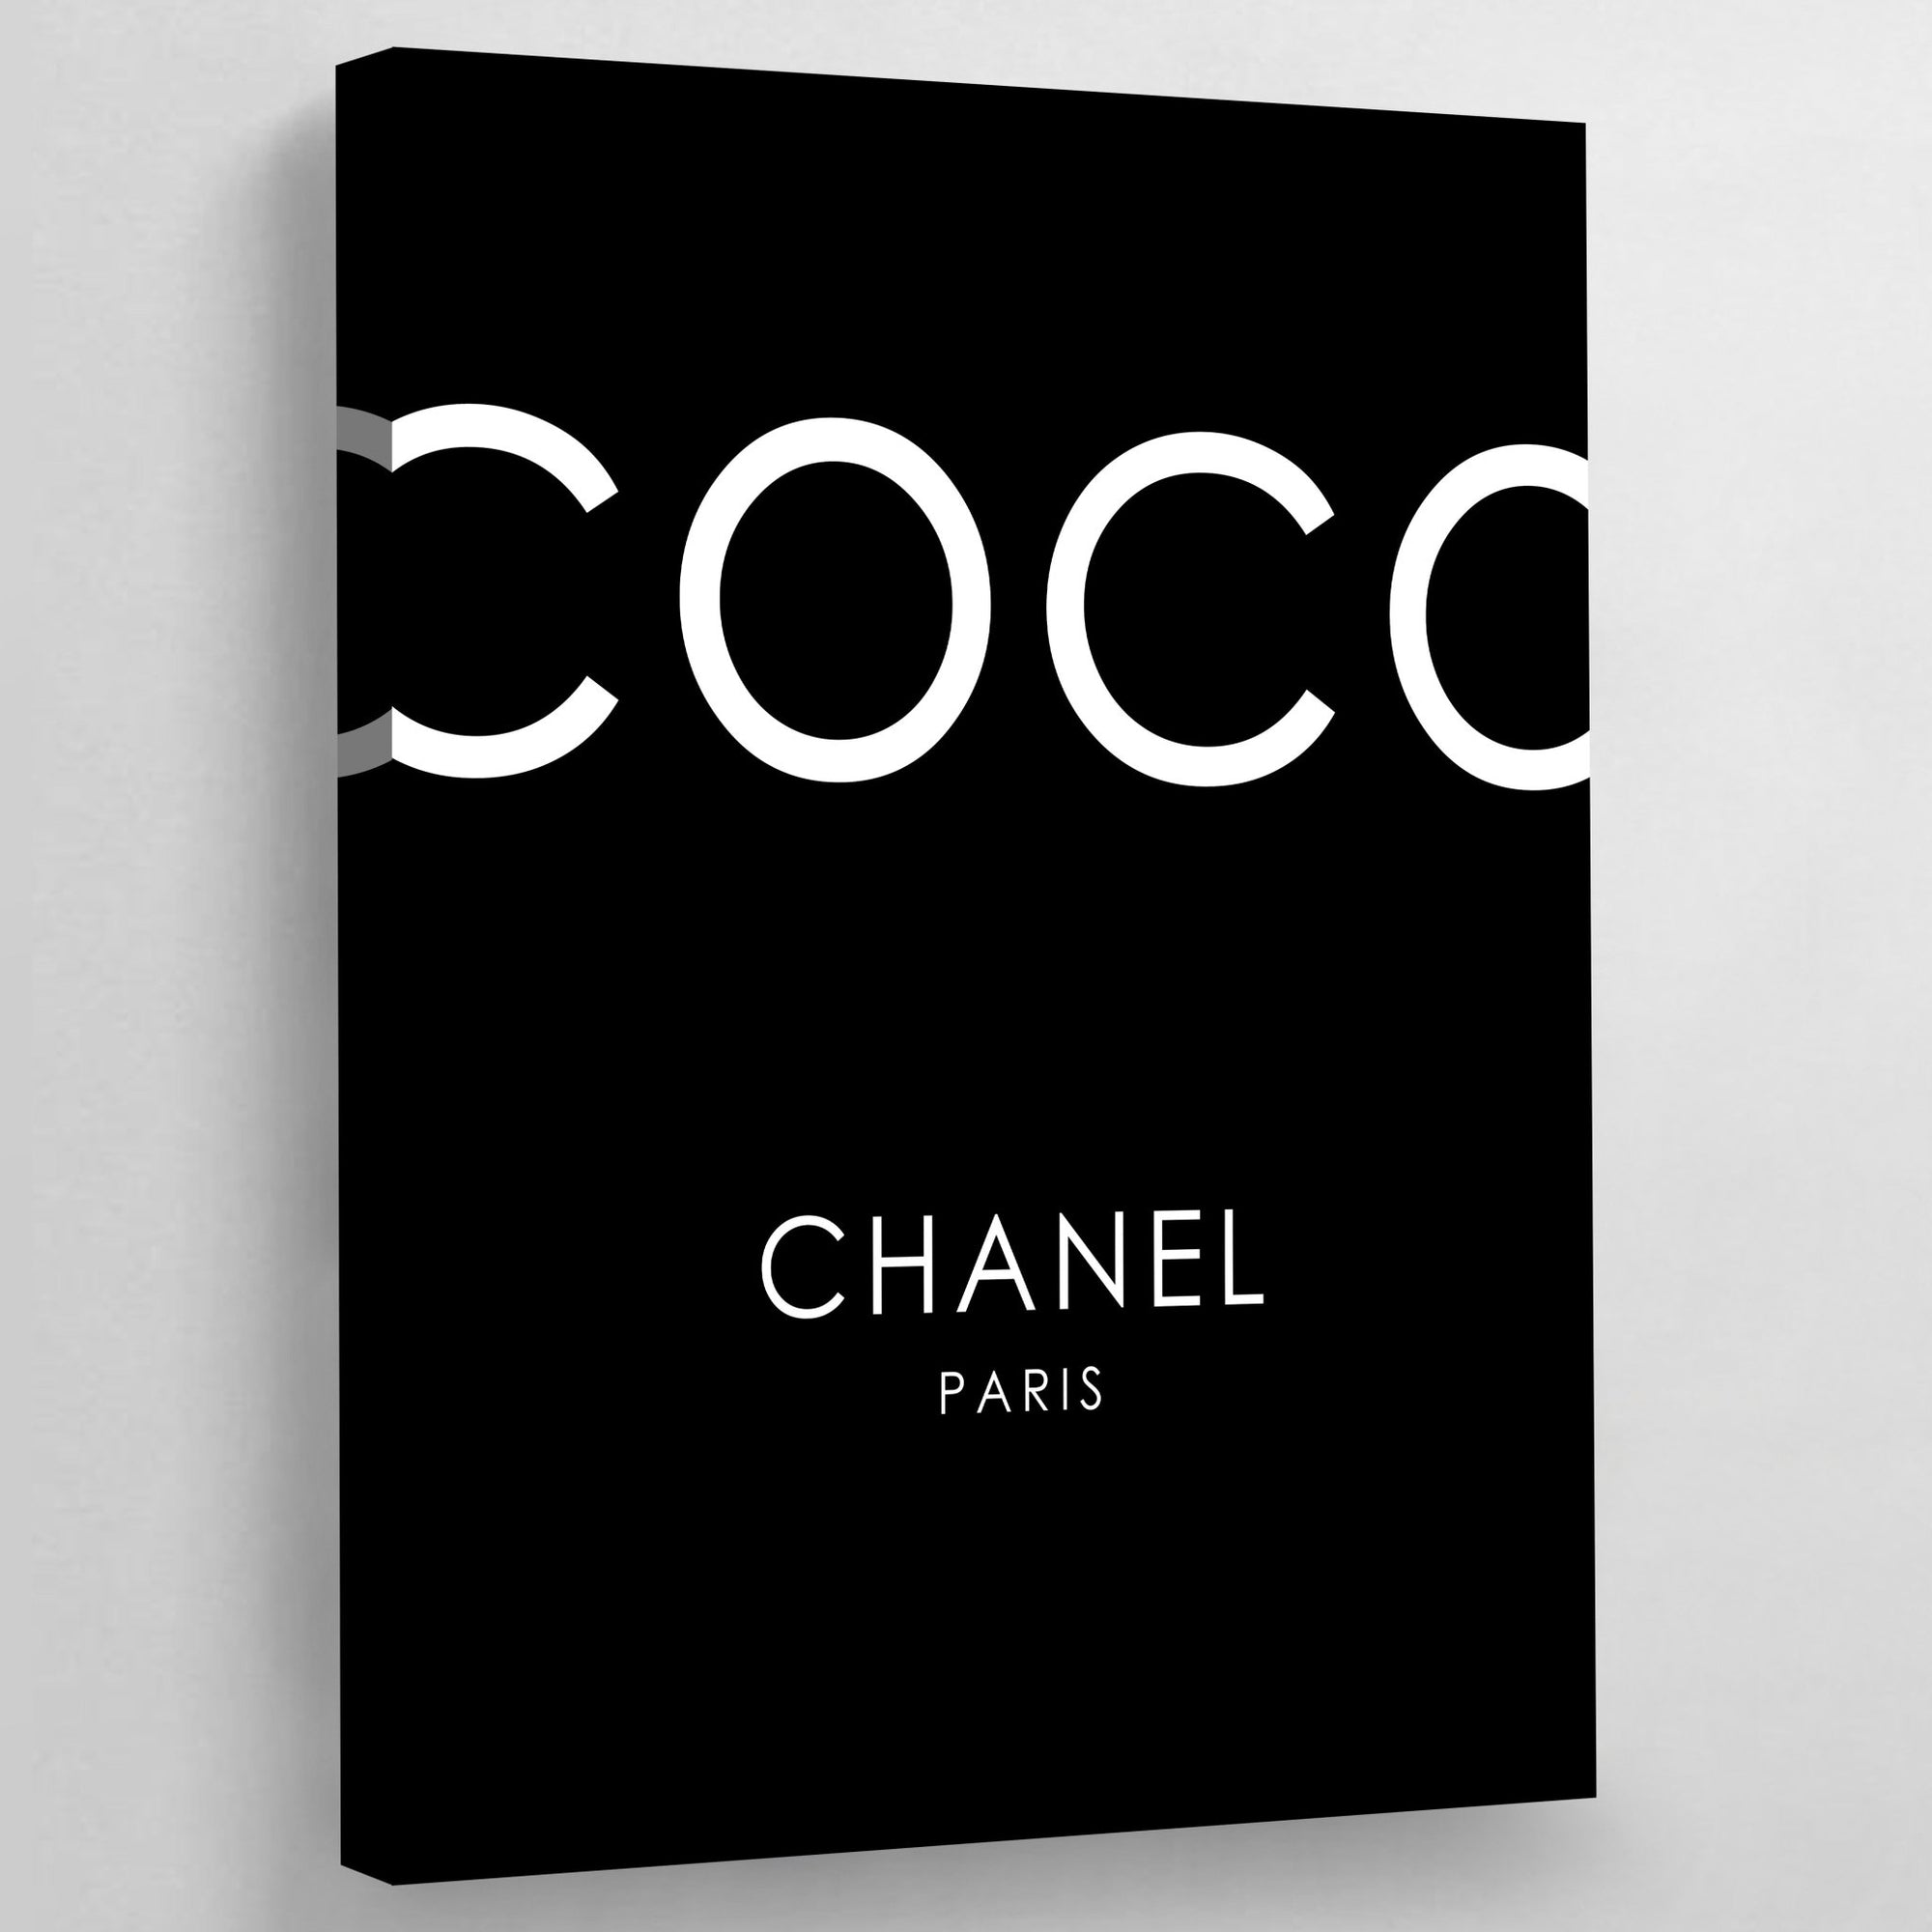 Luxe photo de luxe Parfum Chanel 425 x 525 cm  Peinture Chanel   Décoration murale  bolcom